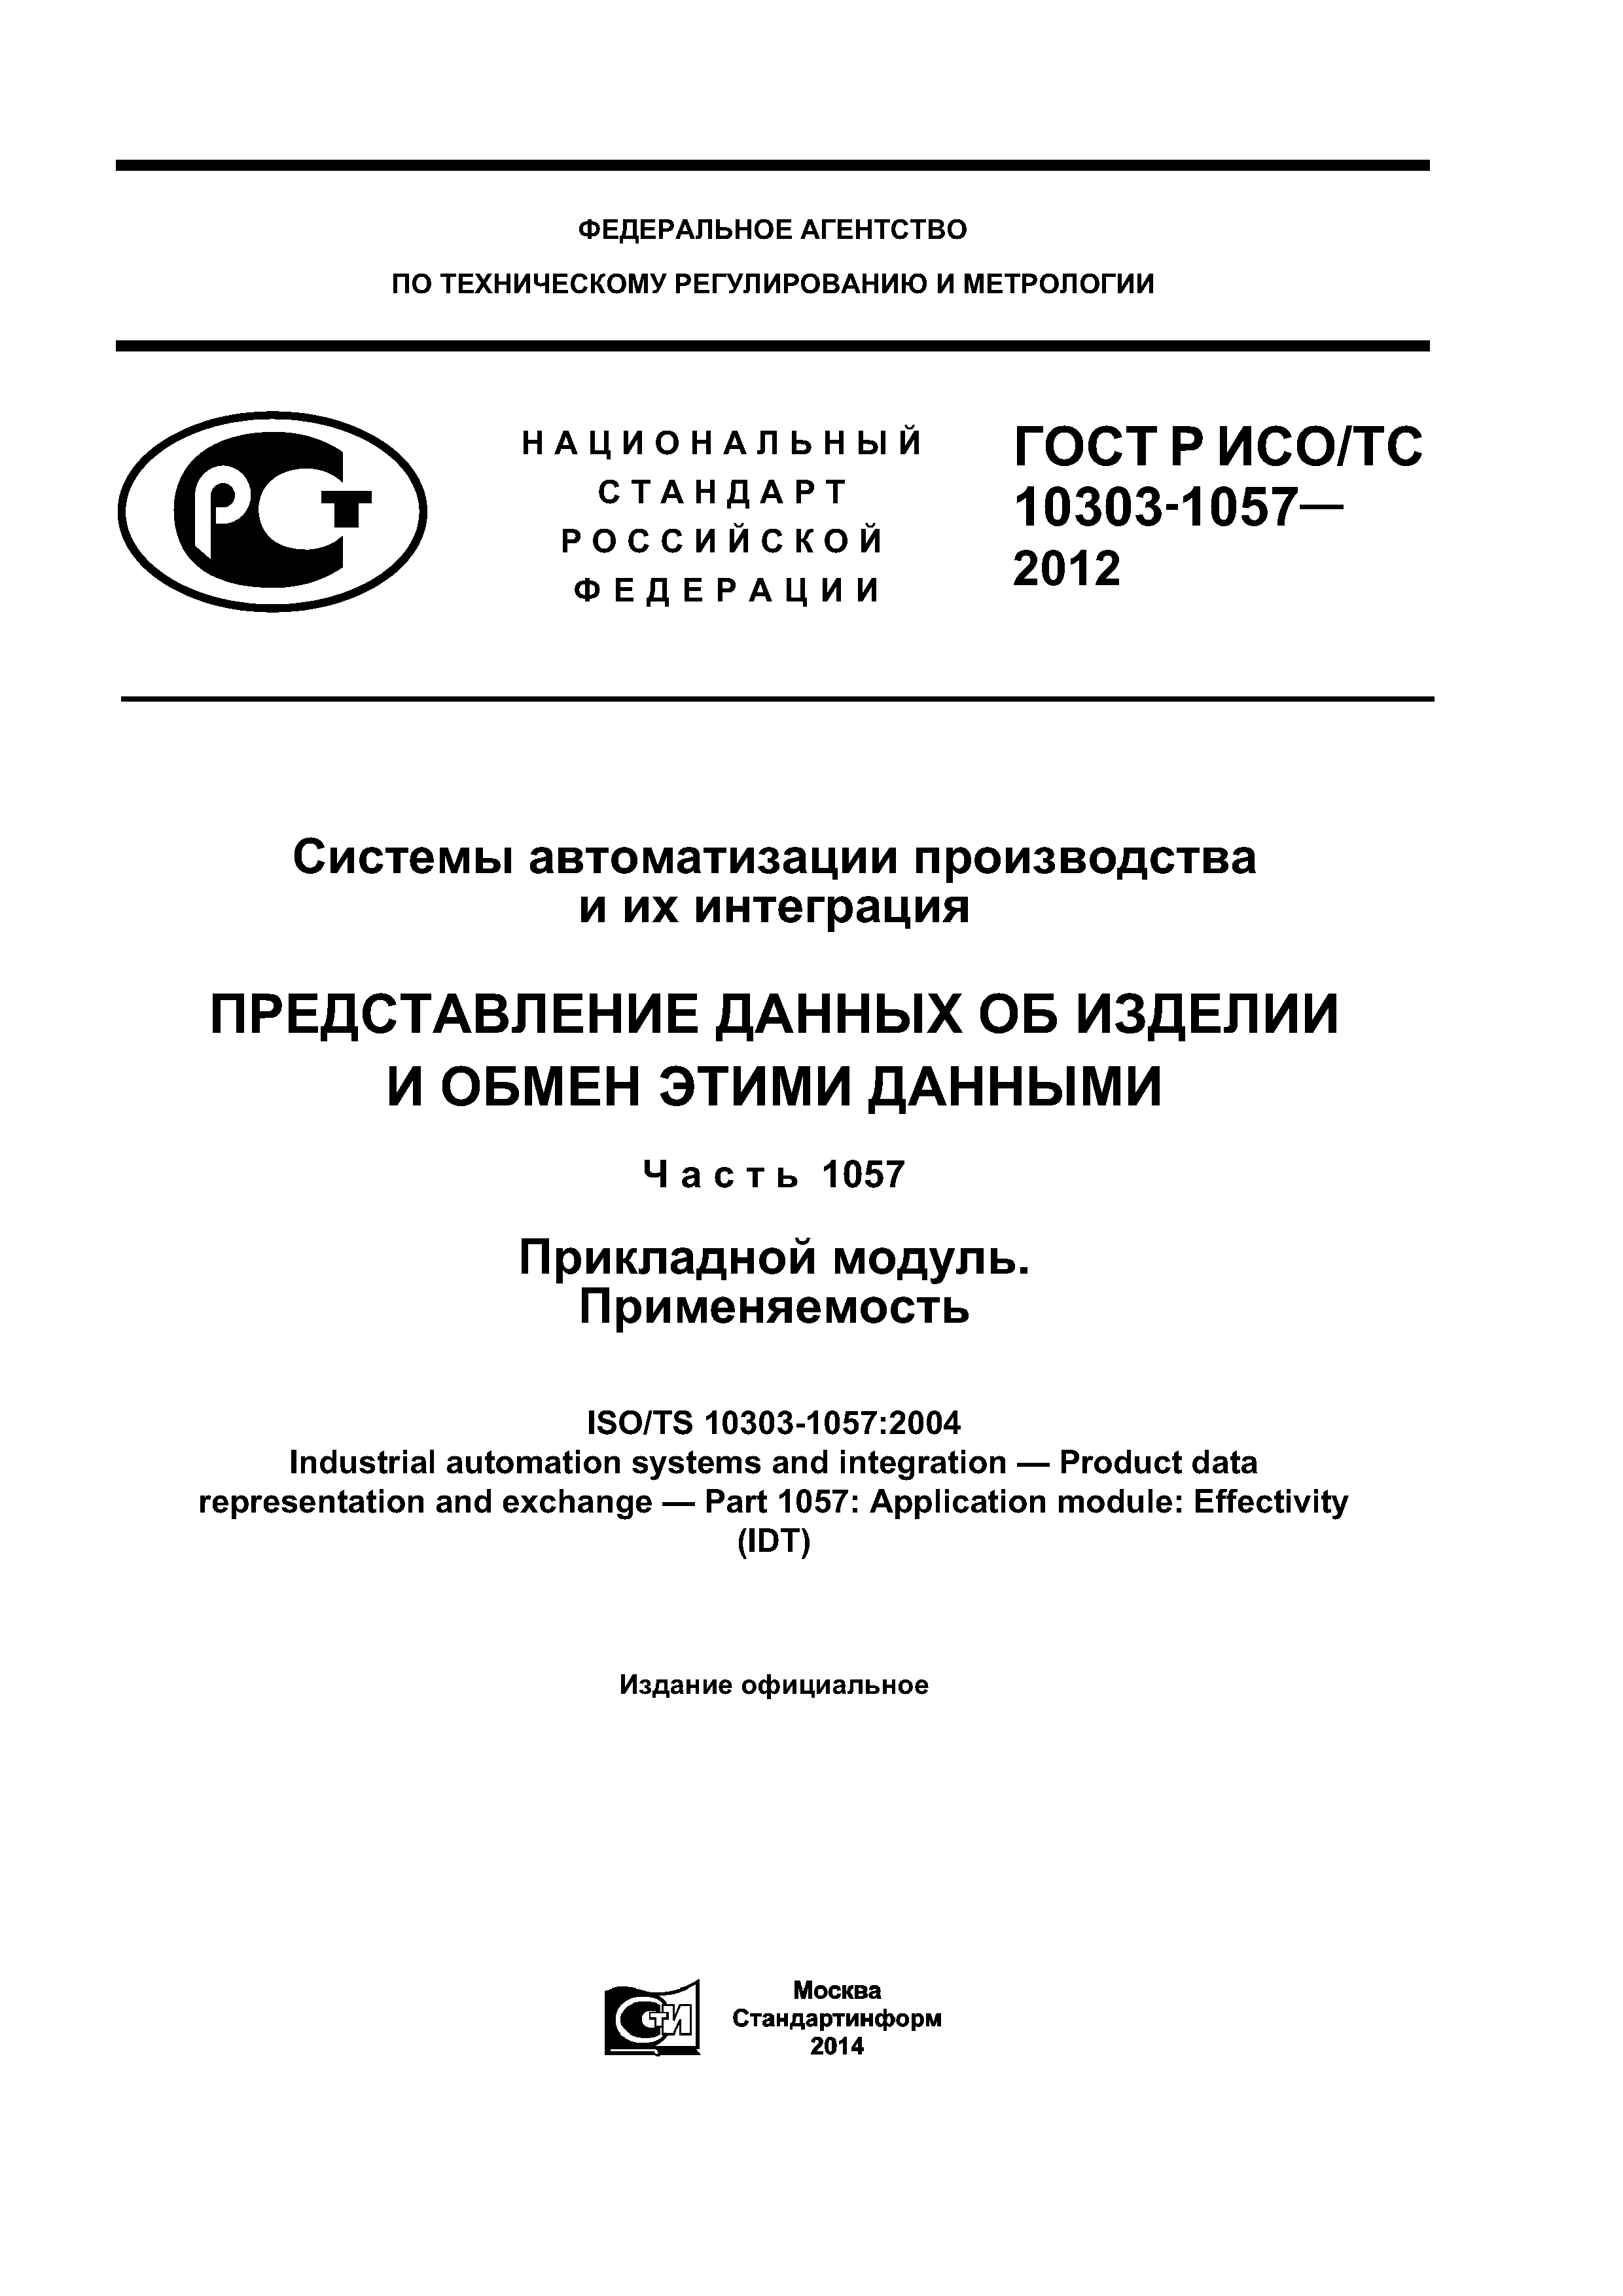 ГОСТ Р ИСО/ТС 10303-1057-2012